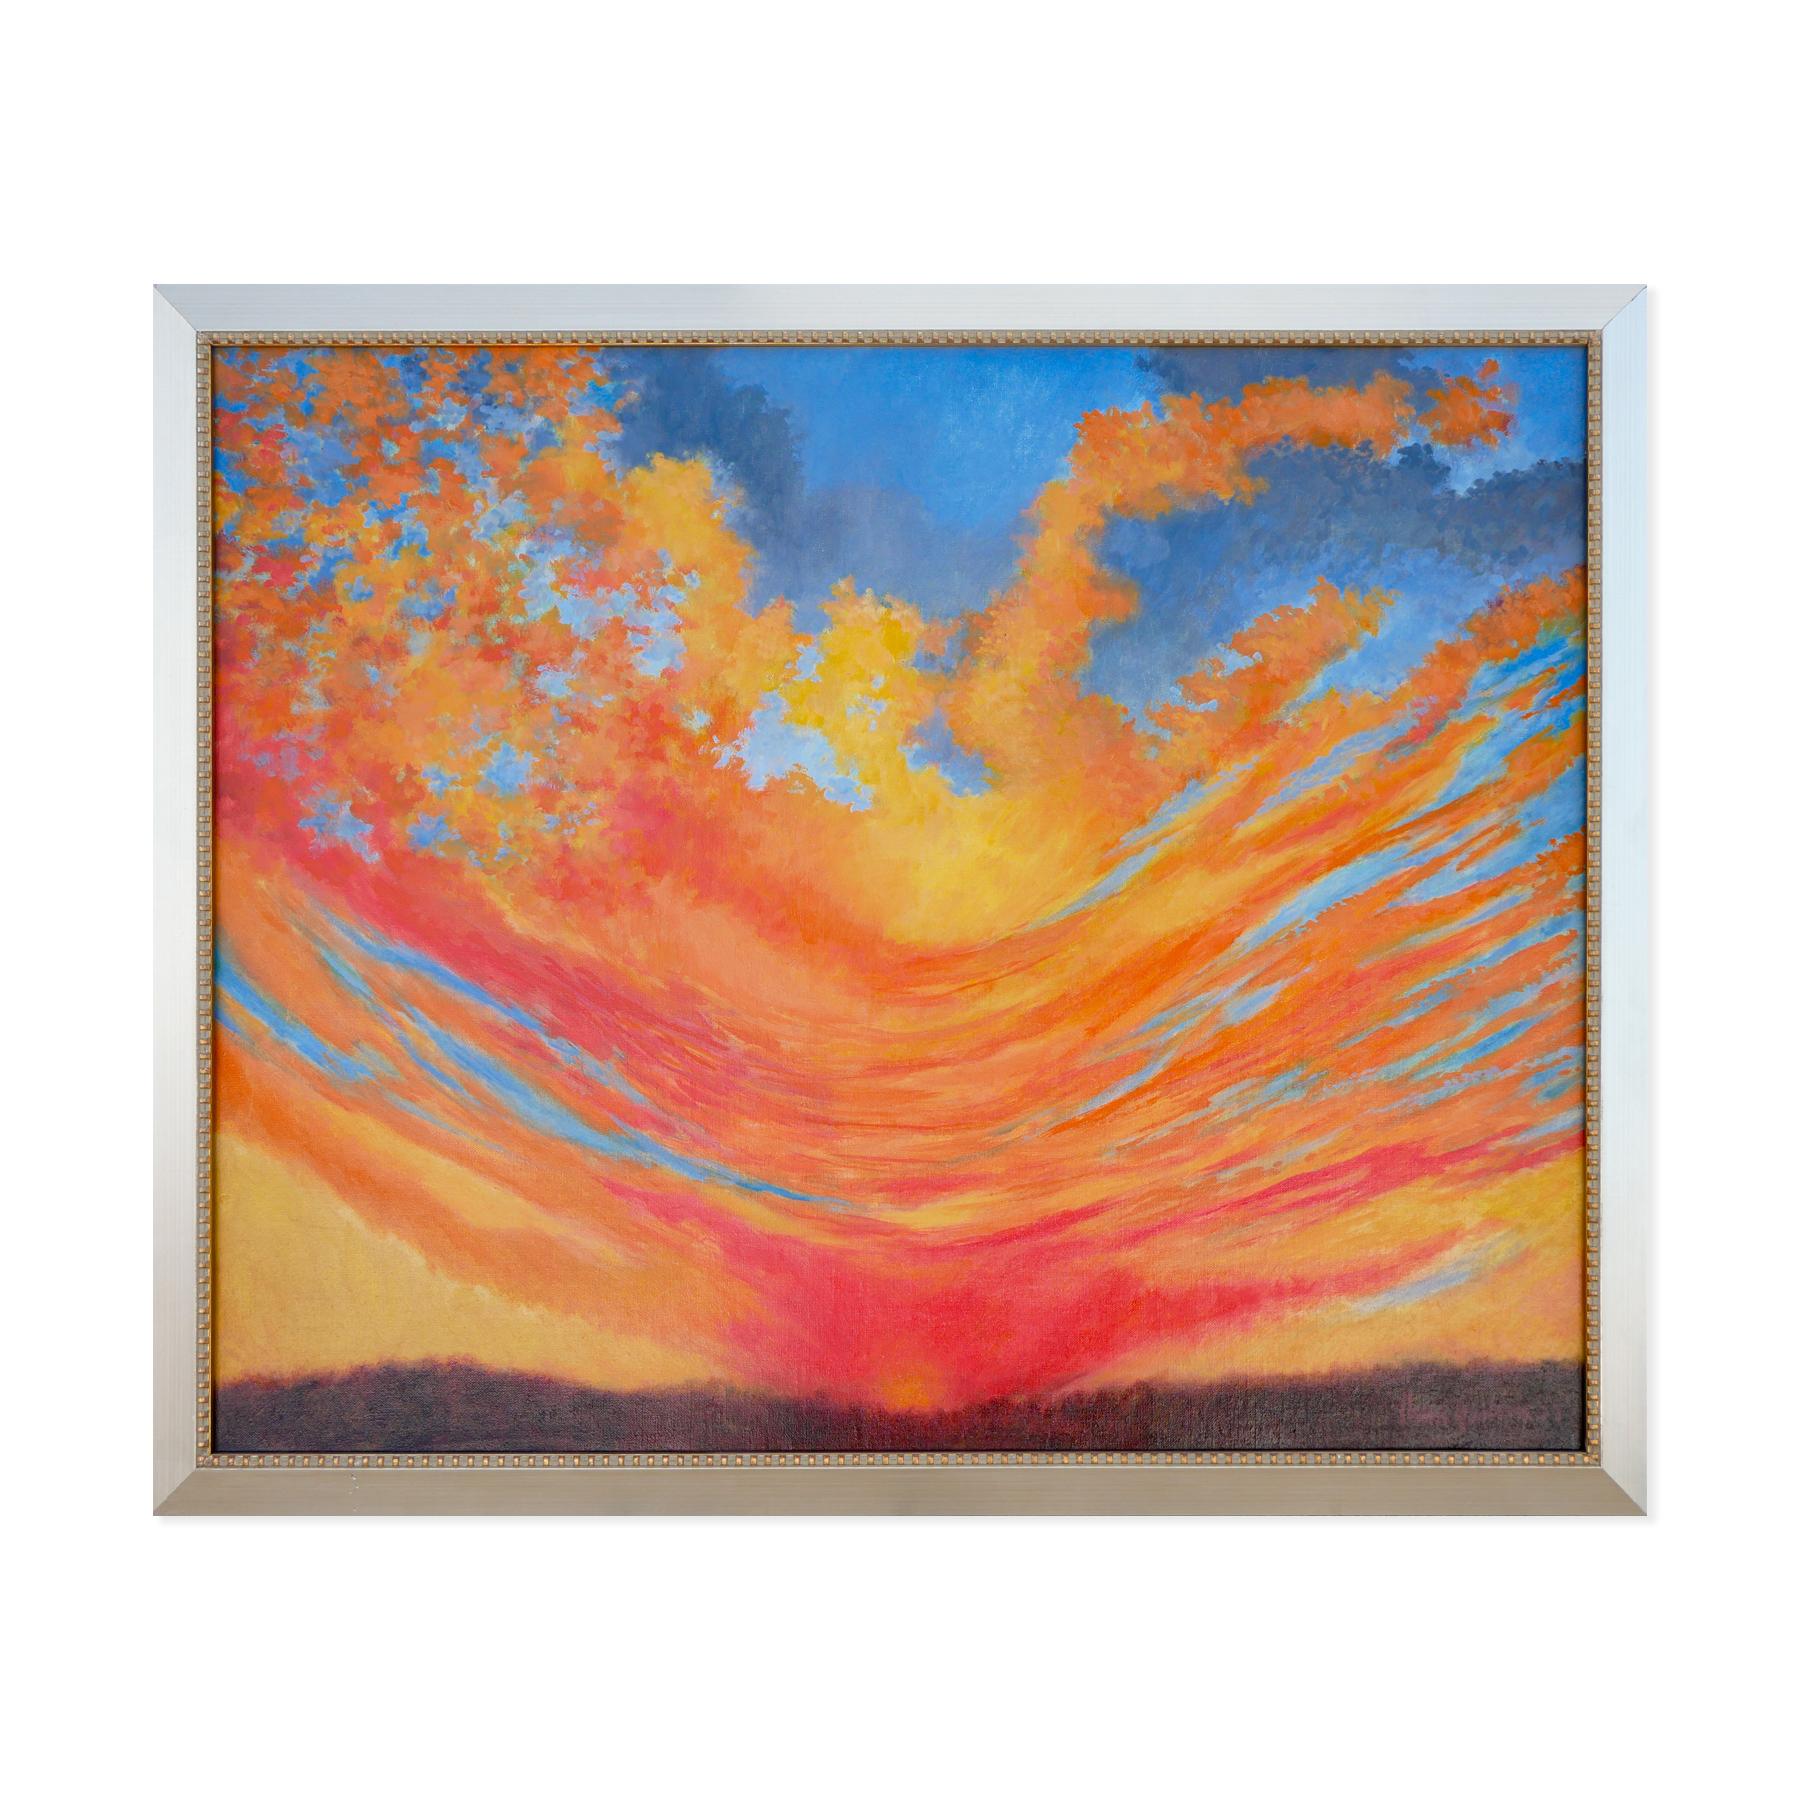 Abstrakt-expressionistische Sonnenuntergang-Landschaft in Blau, Orange und Gelb – Print von Henri Gadbois